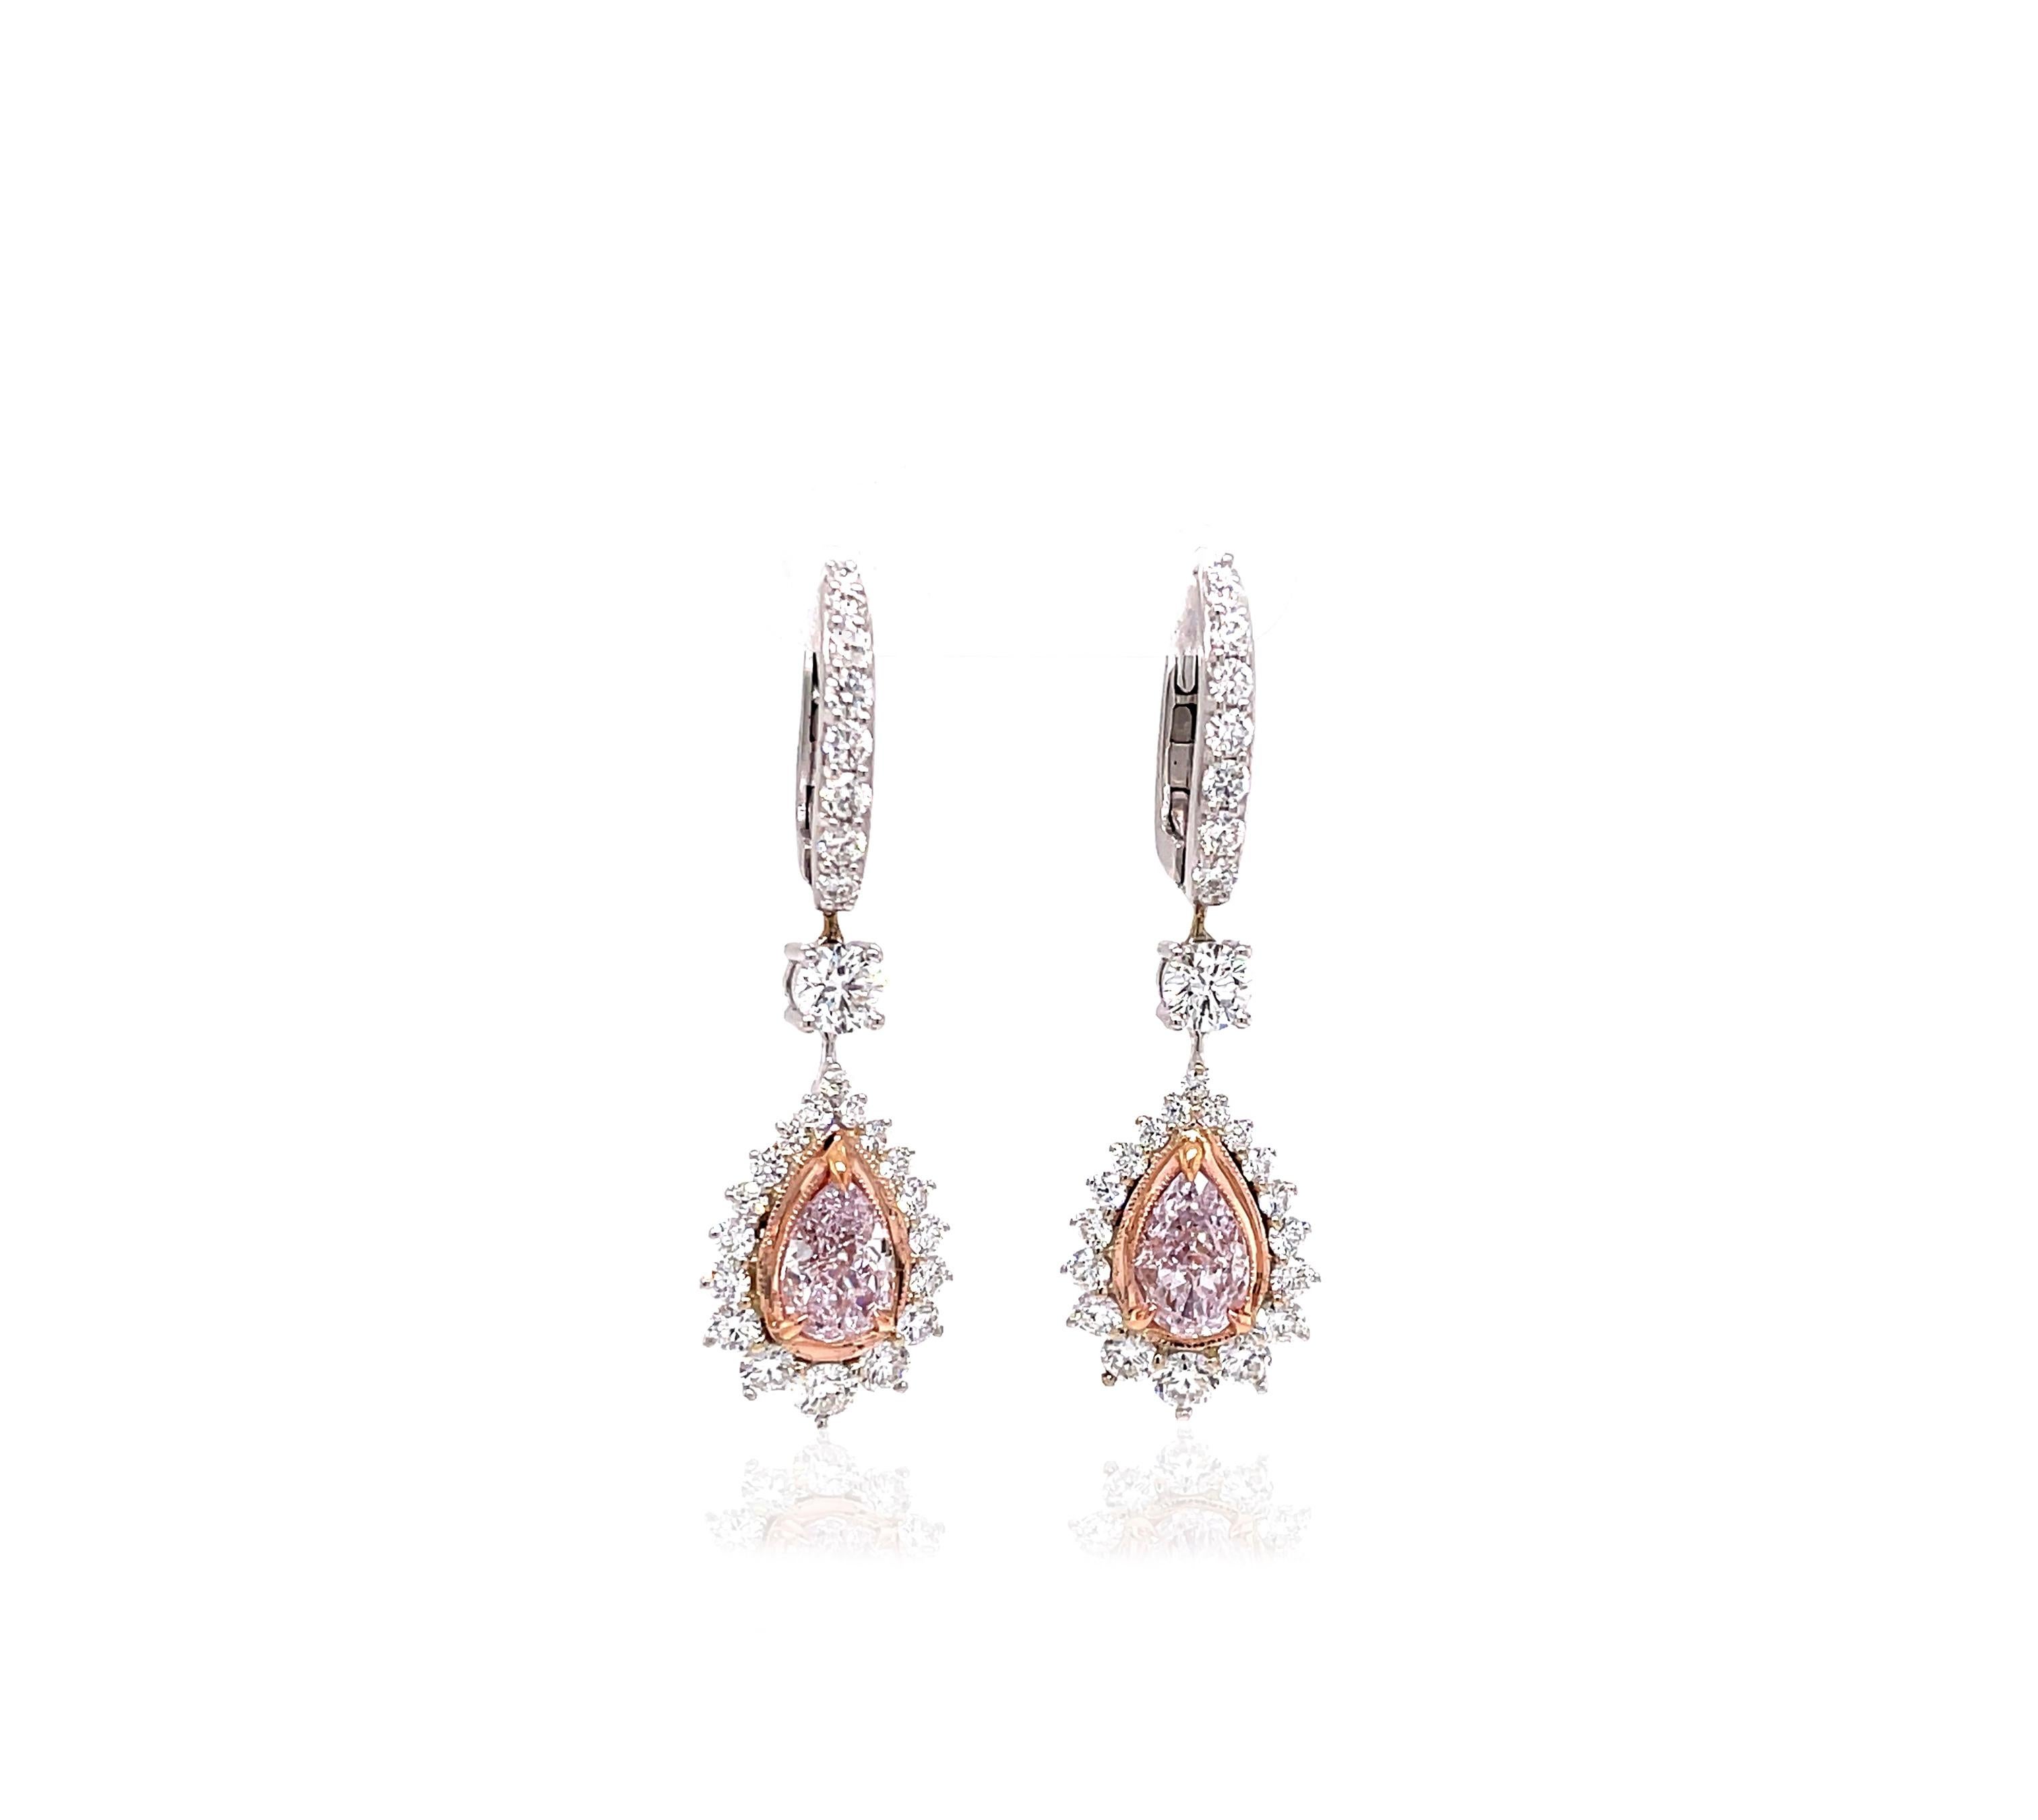 Novel Collection mit einem exquisiten Set von Diamanttropfen-Ohrringen im viktorianischen Stil, die ein zentrales Duo aus perfekt aufeinander abgestimmten hellrosa Diamanten im Birnenschliff mit einem Gesamtgewicht von 2 Karat hervorheben. Diese